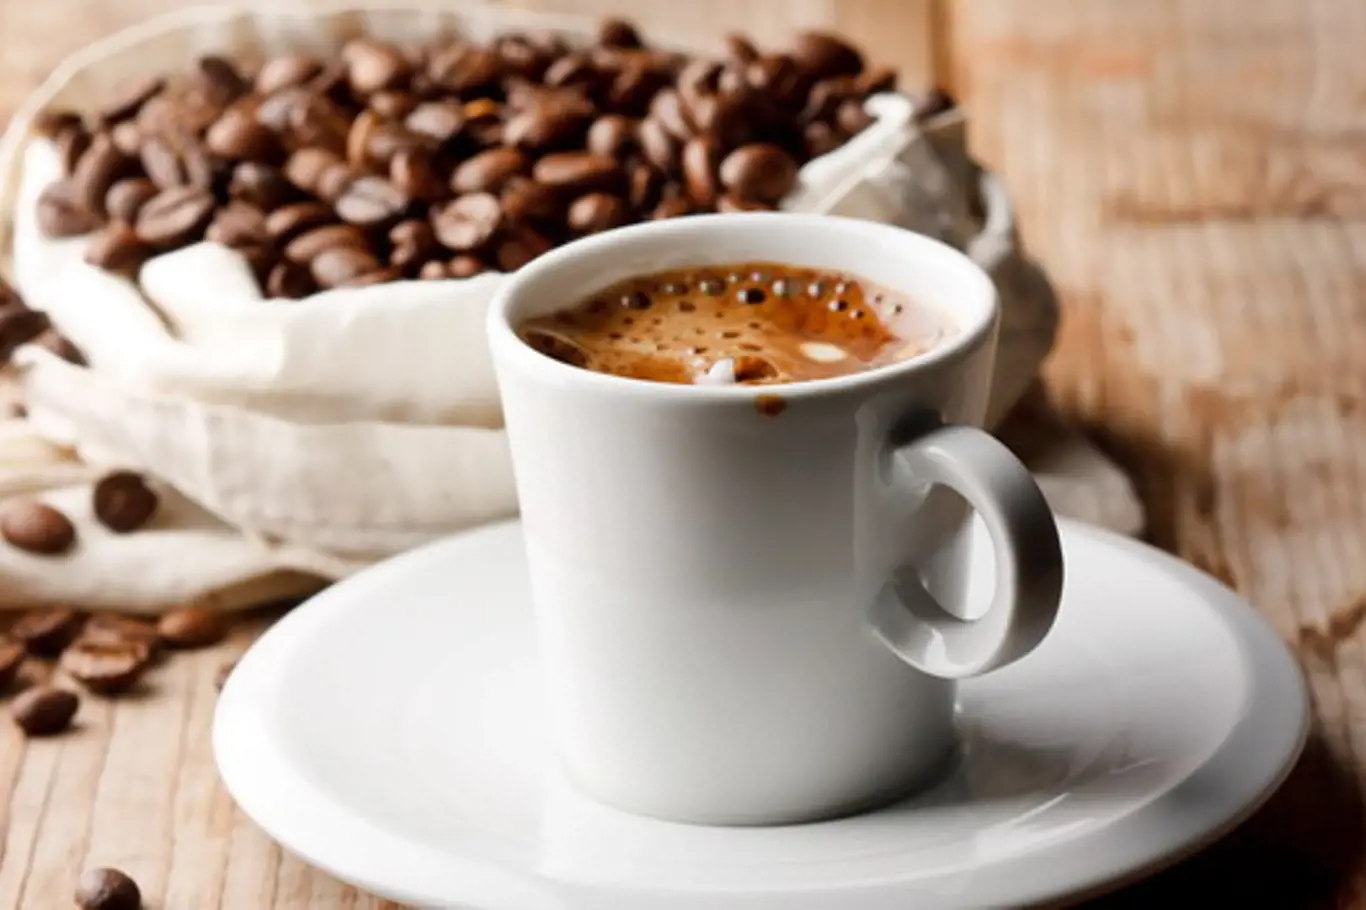 Kawa zmieszana z popularnymi przyprawami kuchennymi znacznie ułatwia utratę wagi